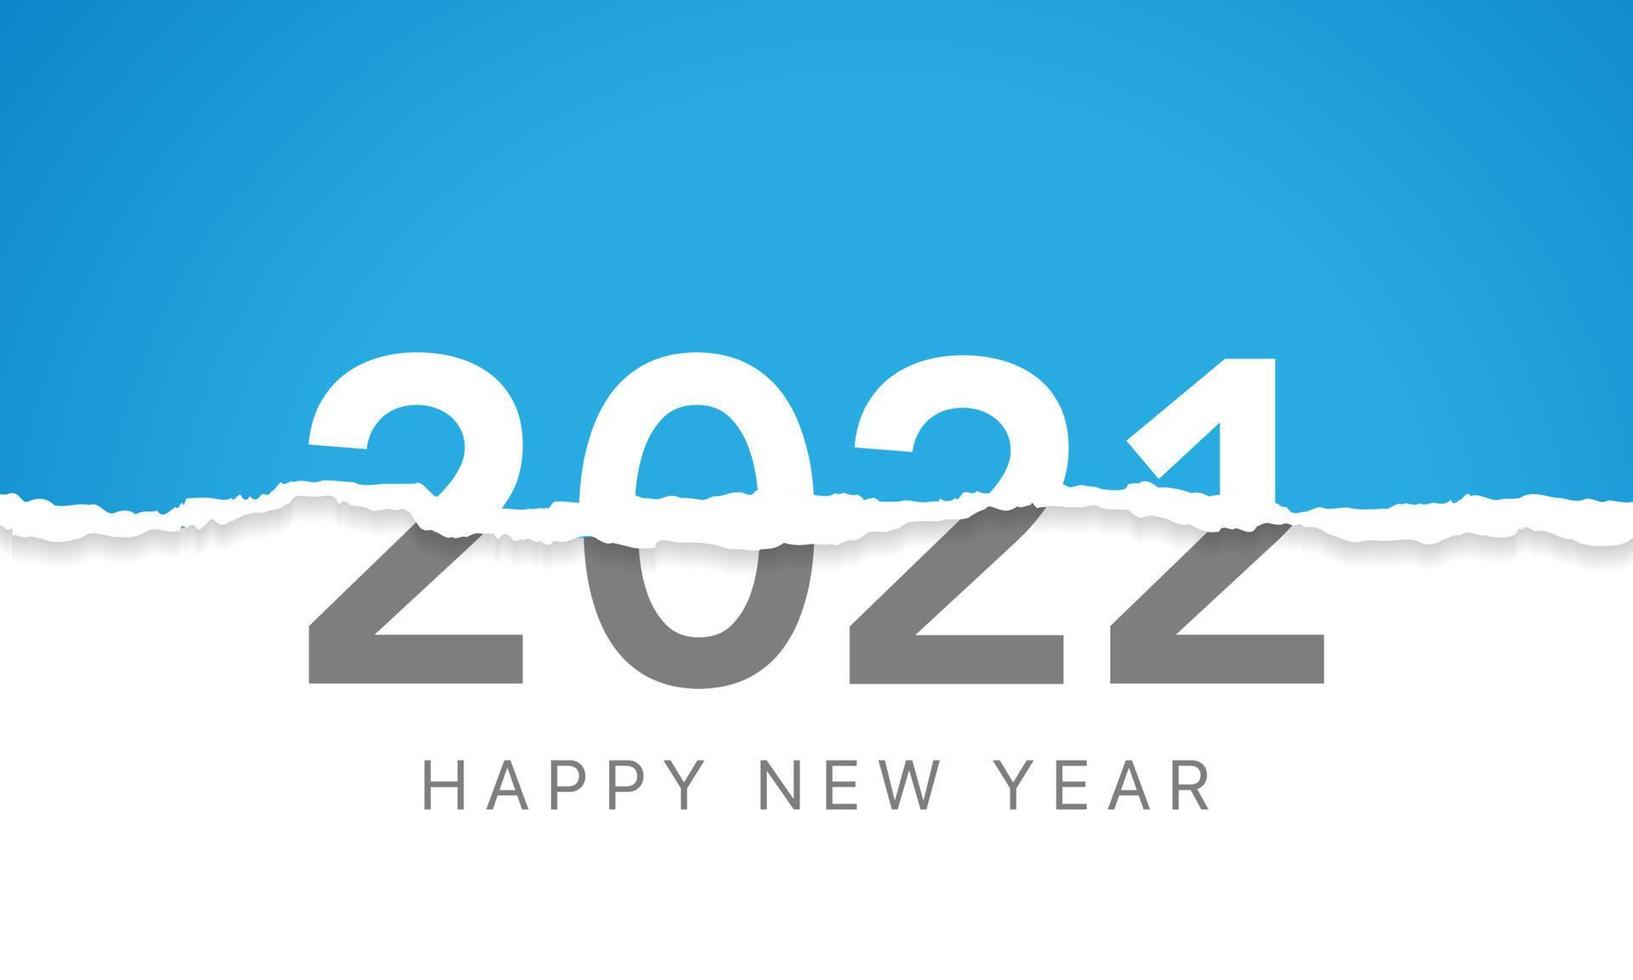 objectif vision 2022 écrit derrière un papier déchiré. papier déchiré révélant le nombre 2022. vecteur